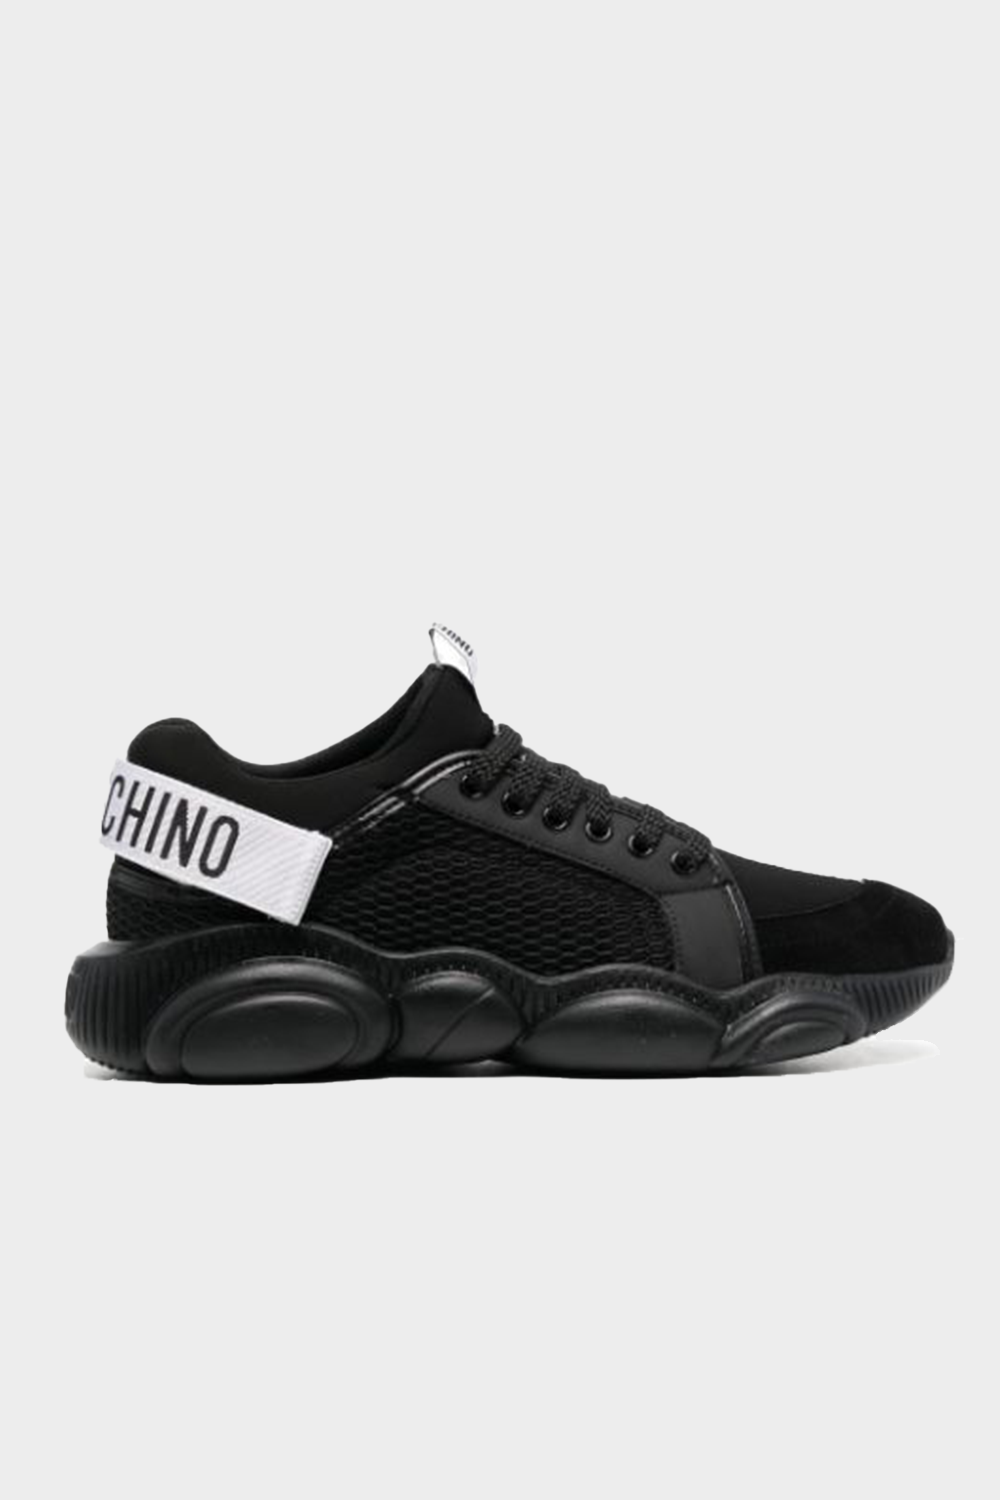 נעלי סניקרס מבד לגברים MOSCHINO בצבע שחור MOSCHINO Vendome online | ונדום .